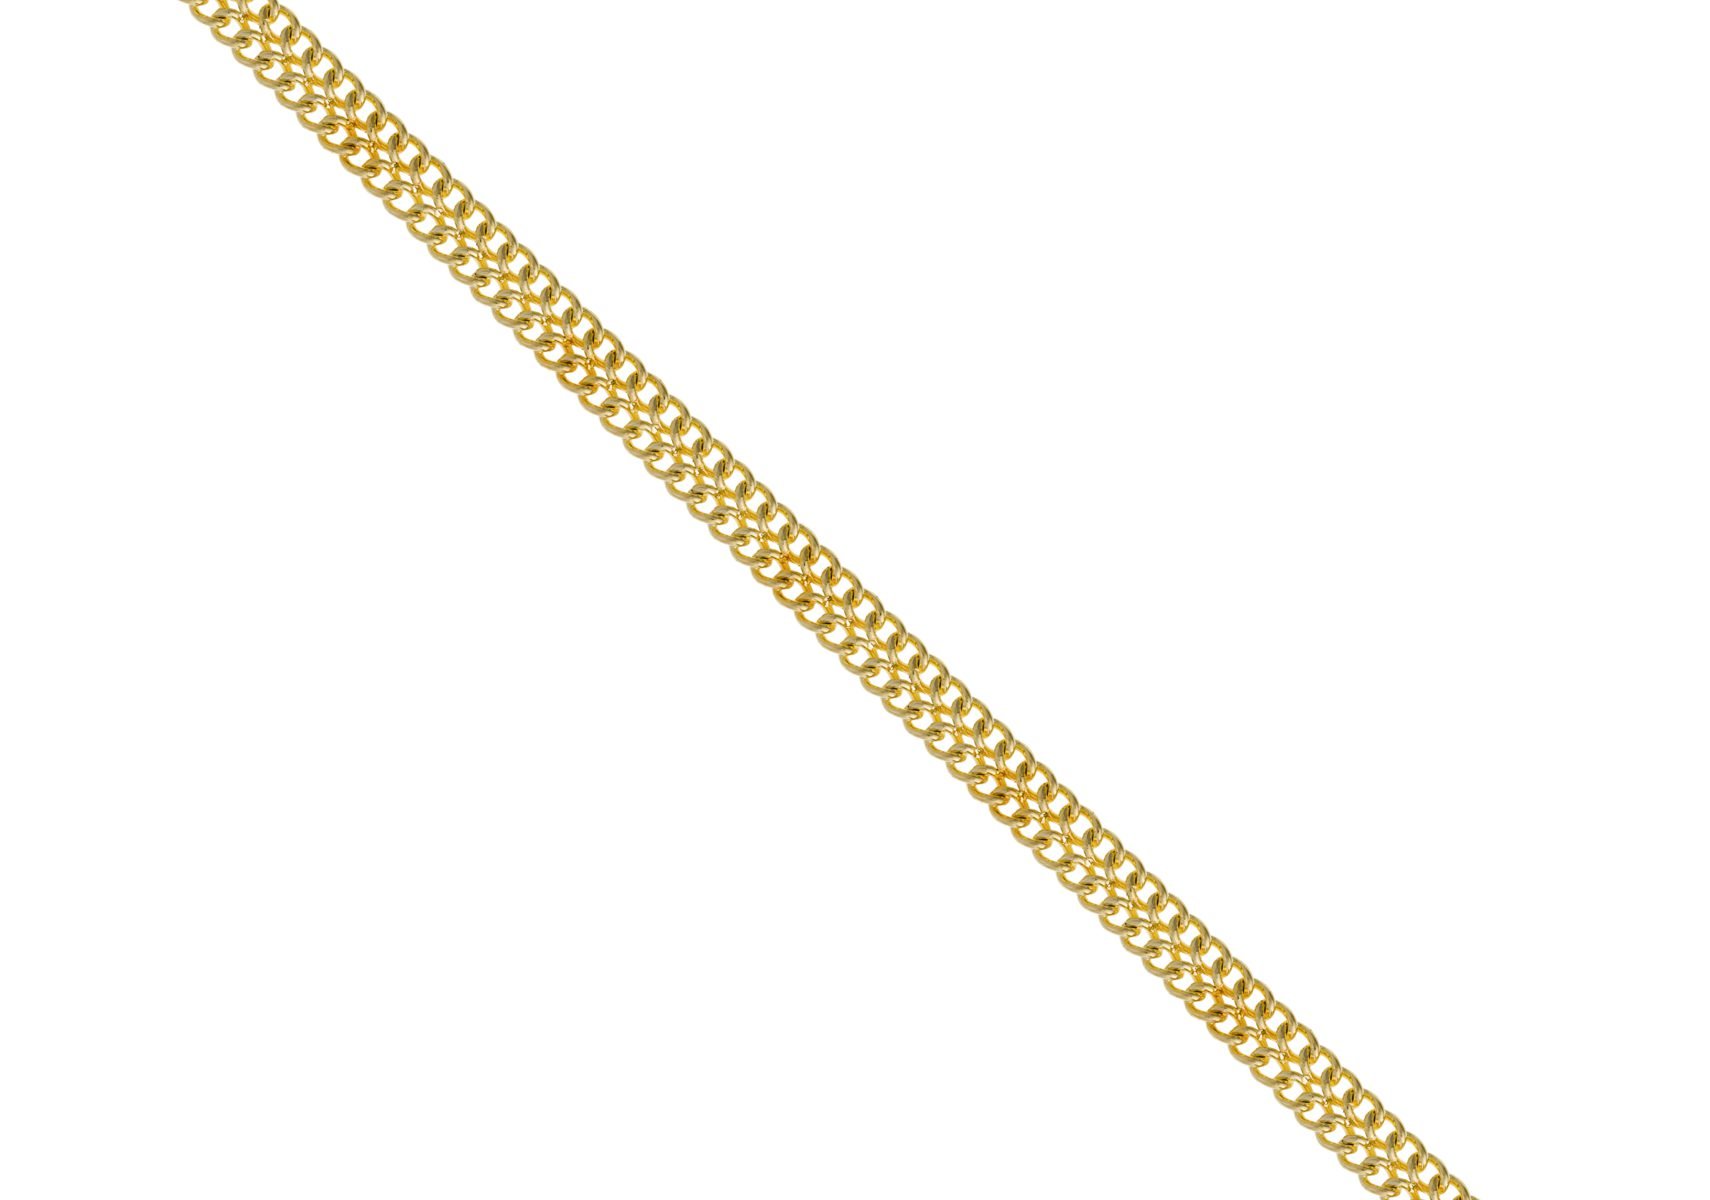 Bismark Arrow gold chain machine